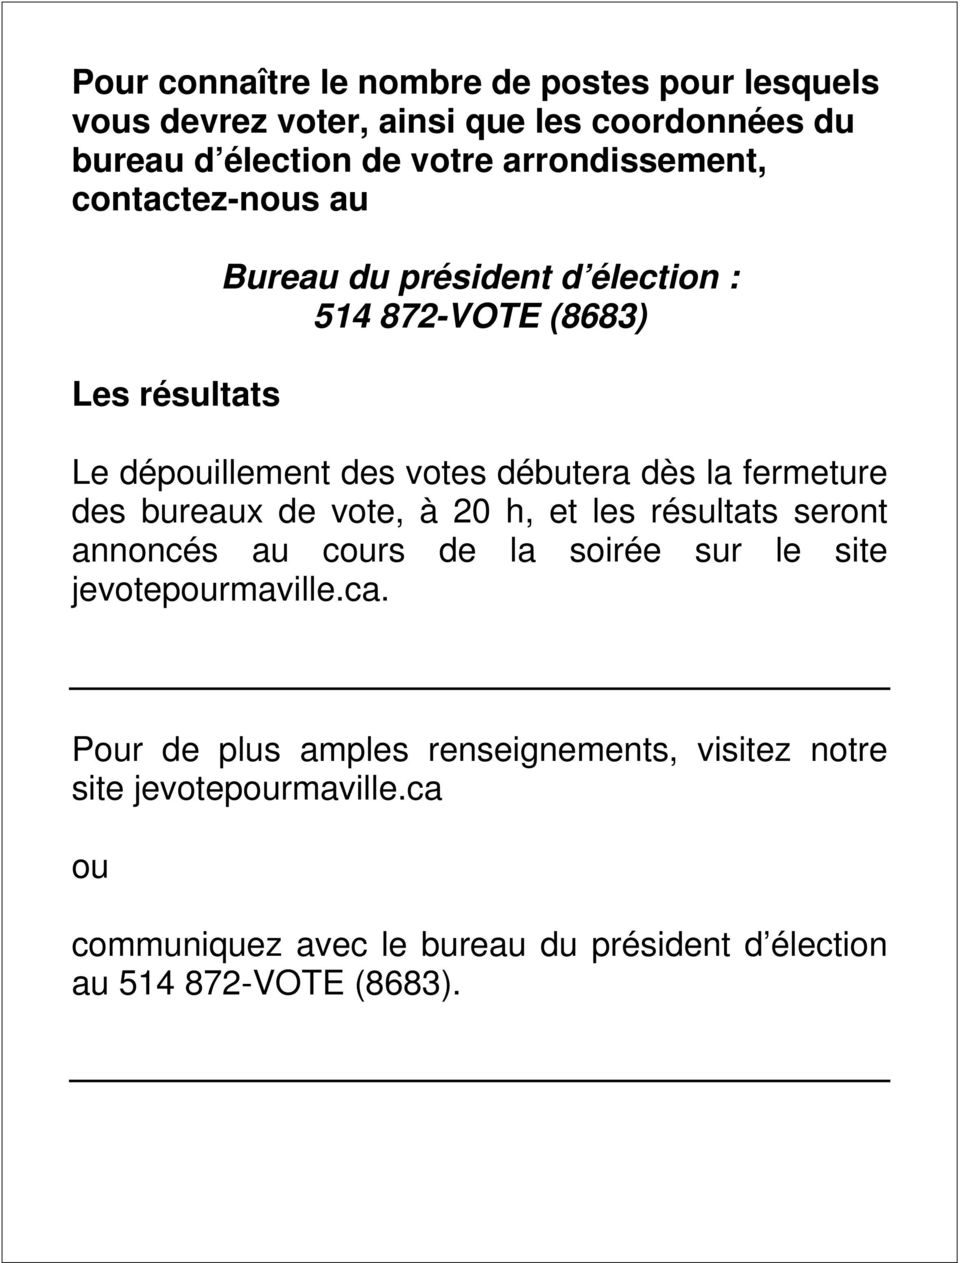 dès la fermeture des bureaux de vote, à 20 h, et les résultats seront annoncés au cours de la soirée sur le site jevotepourmaville.ca.